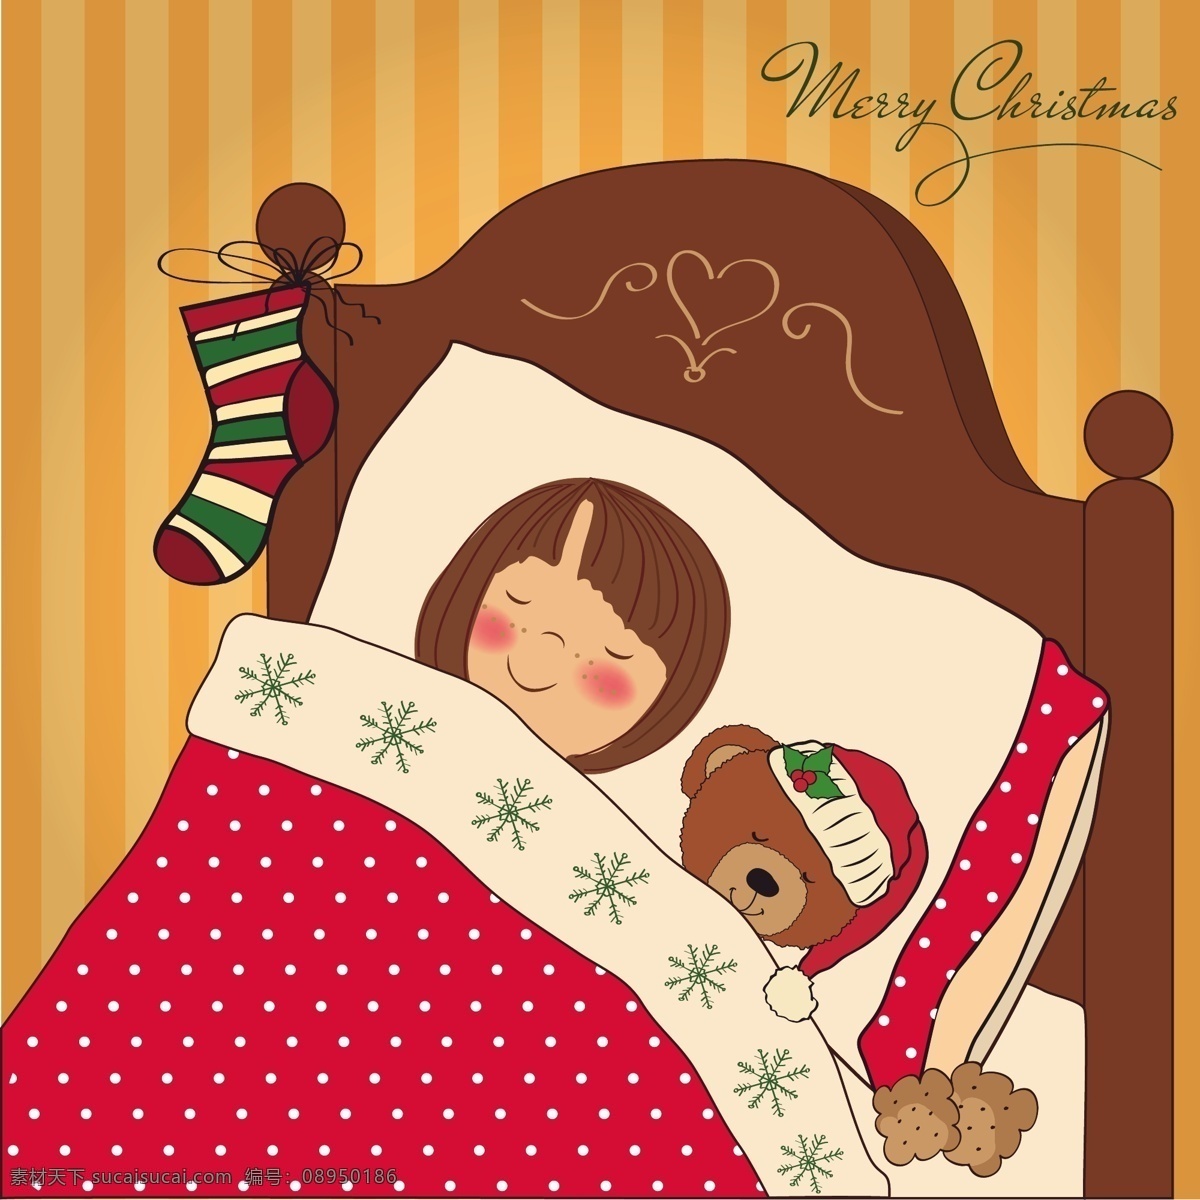 圣诞卡 女孩 睡觉 圣诞节 一方面 卡片 圣诞快乐 冬天 手绘 快乐 可爱的熊 圣诞 庆祝活动 丰富多彩 睡眠 泰迪熊 庆祝 打招呼 泰迪 绘制 红色